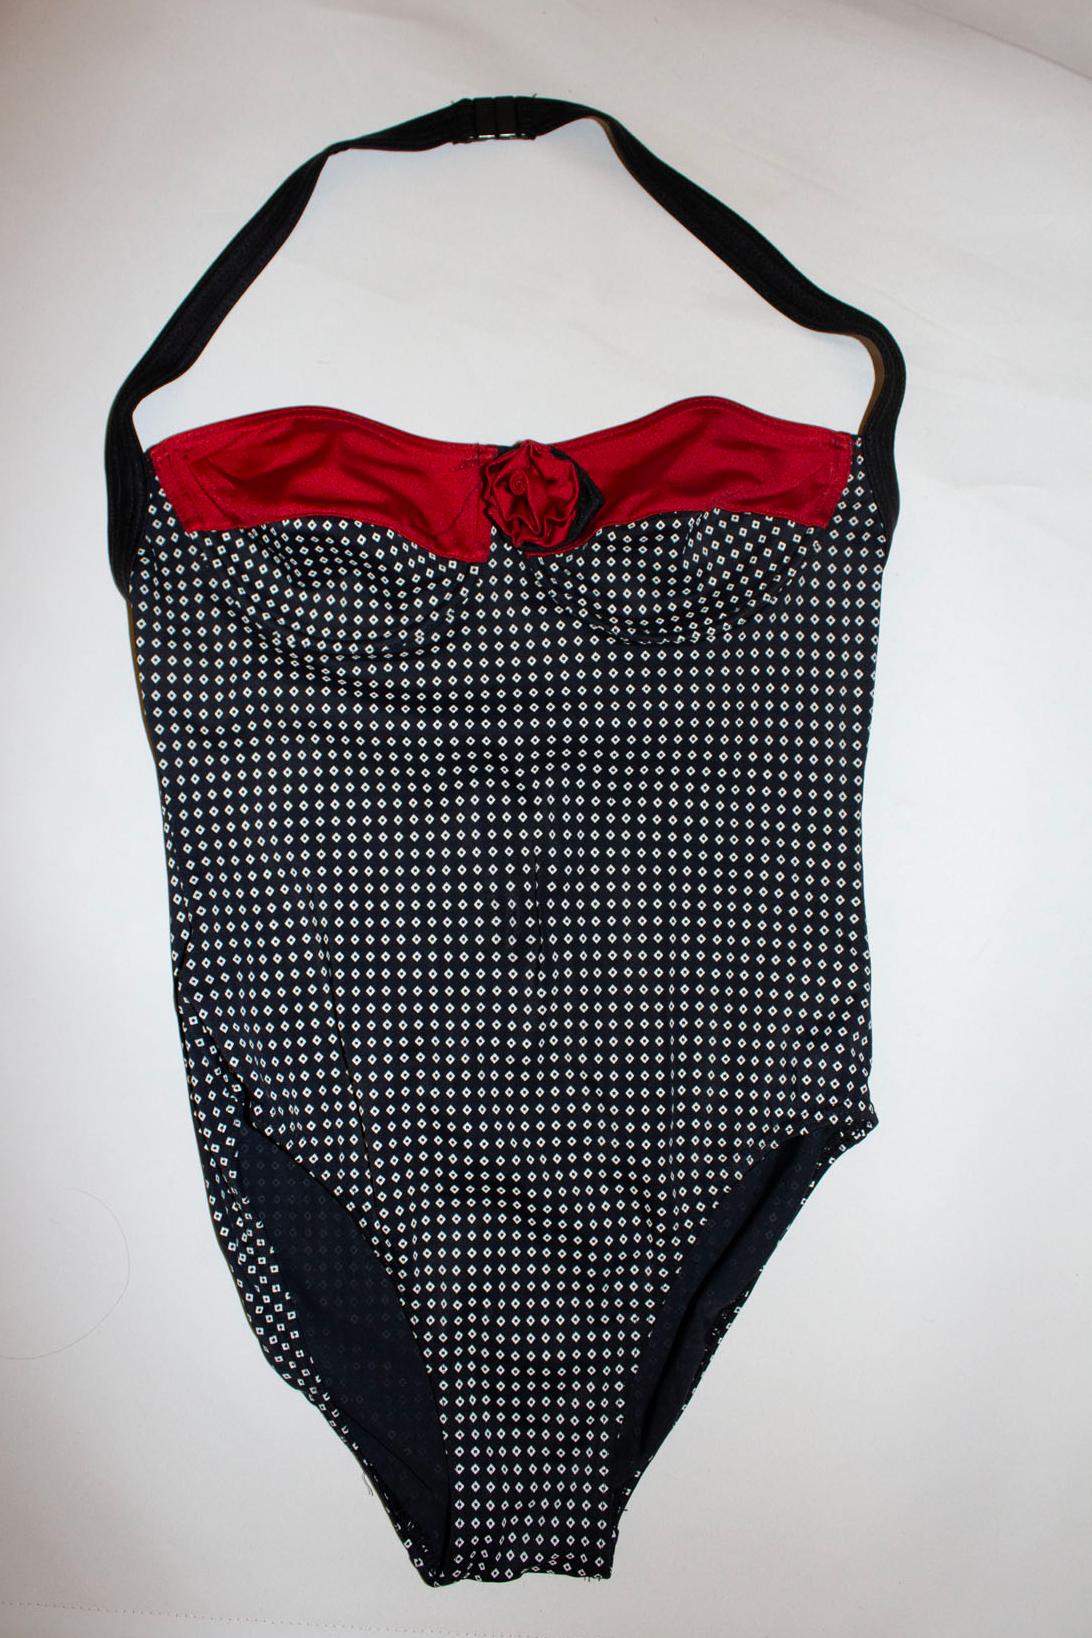 Un maillot de bain vintage amusant de la créatrice britannique Mary Quant. Le costume est imprimé en noir et blanc avec des bordures rouges et des fleurs. Taille 14 ( old 14) , Fabriqué au Royaume-Uni.
Mesures Buste jusqu'à 35'', longueur 32''.